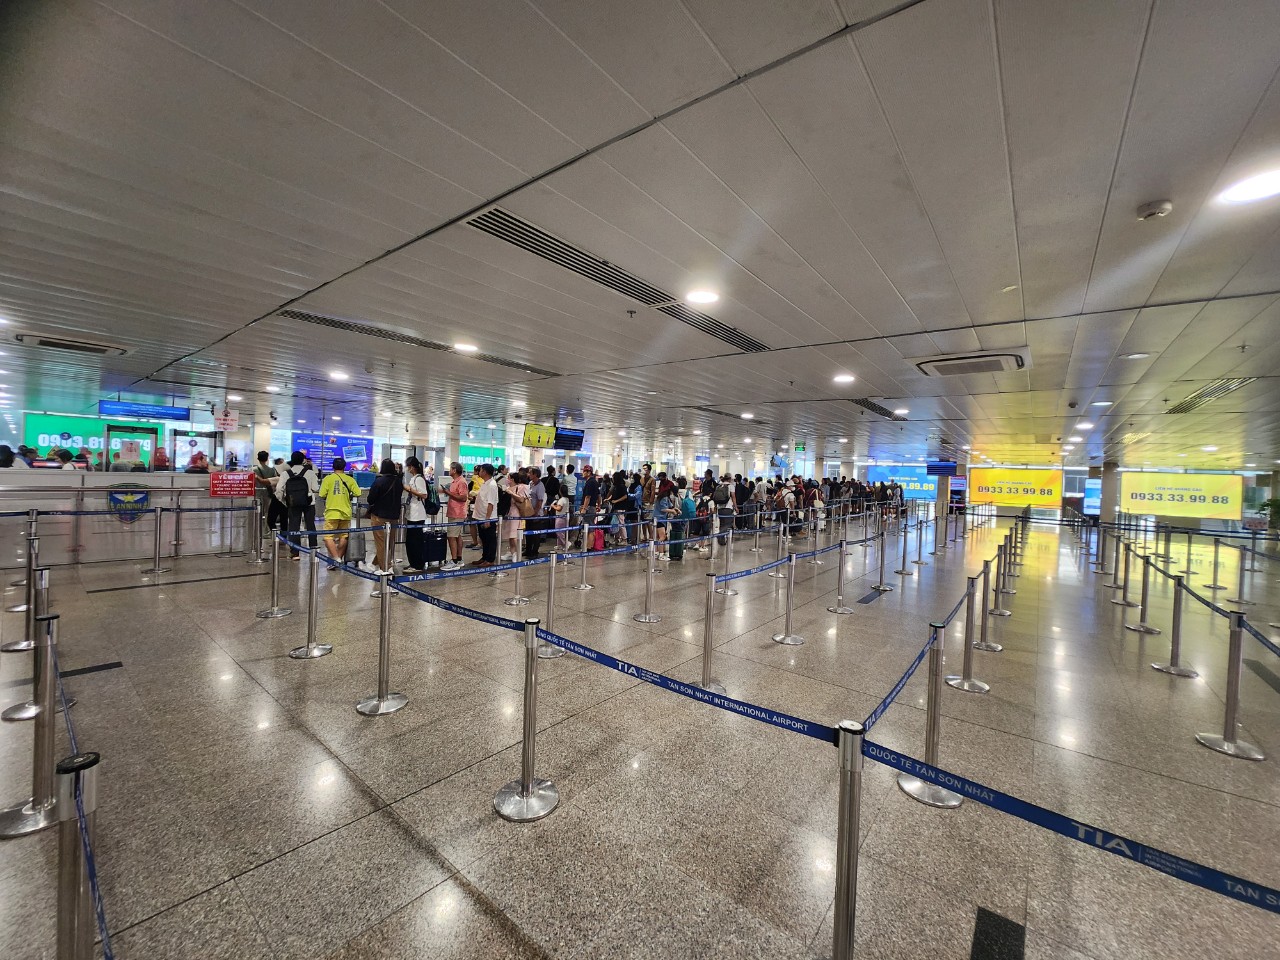 Ngày đầu nghỉ lễ, sân bay Tân Sơn Nhất thông thoáng dù đón lượng khách đông- Ảnh 1.